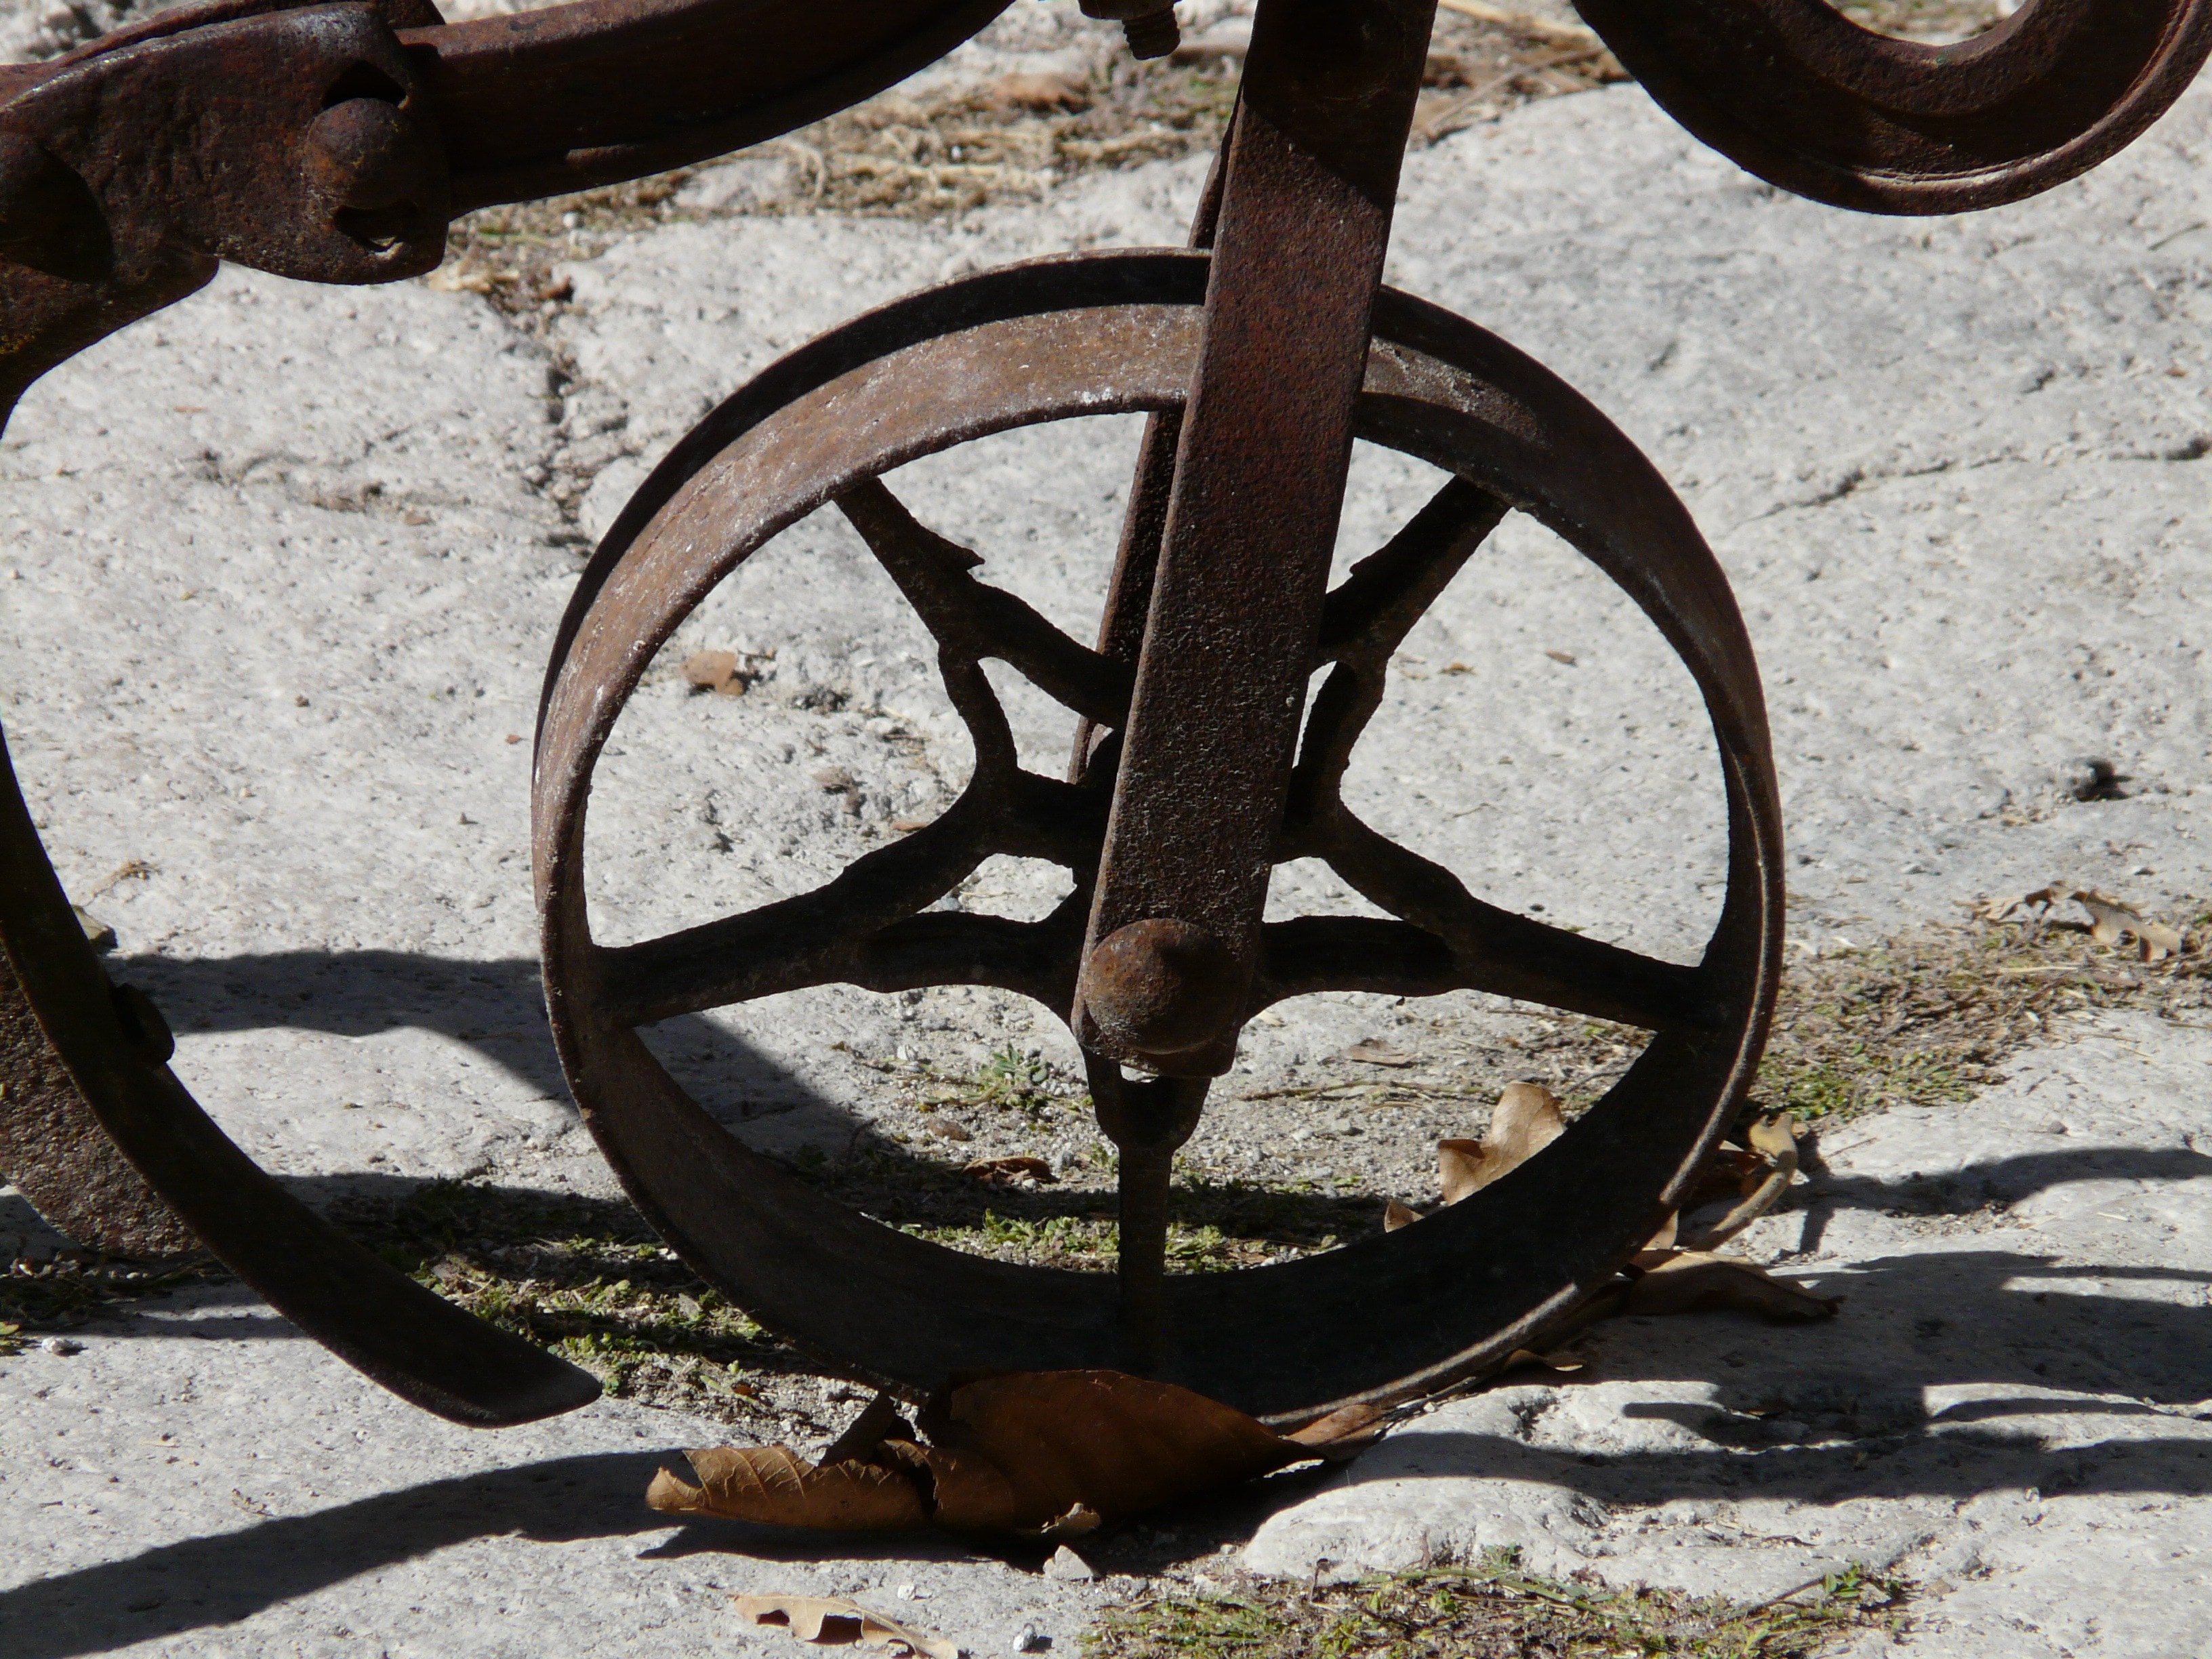 brass metal wheels